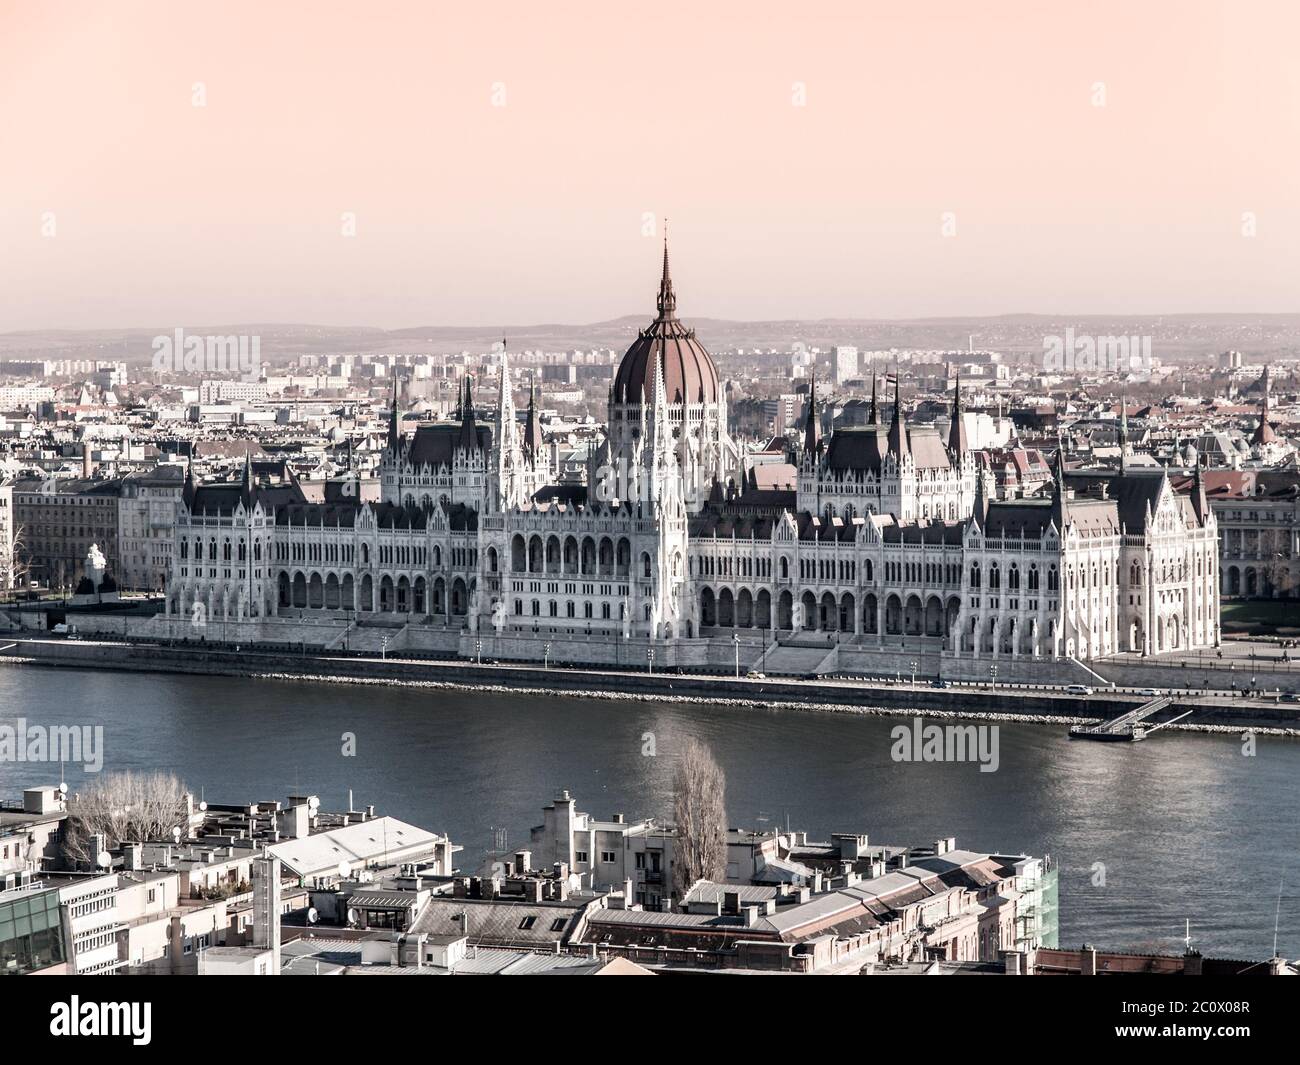 Ungarisches Parlament, aka Orszaghaz, historisches Gebäude am Donauufer im Zentrum von Budapest, Ungarn, Europa. UNESCO-Weltkulturerbe. Stockfoto